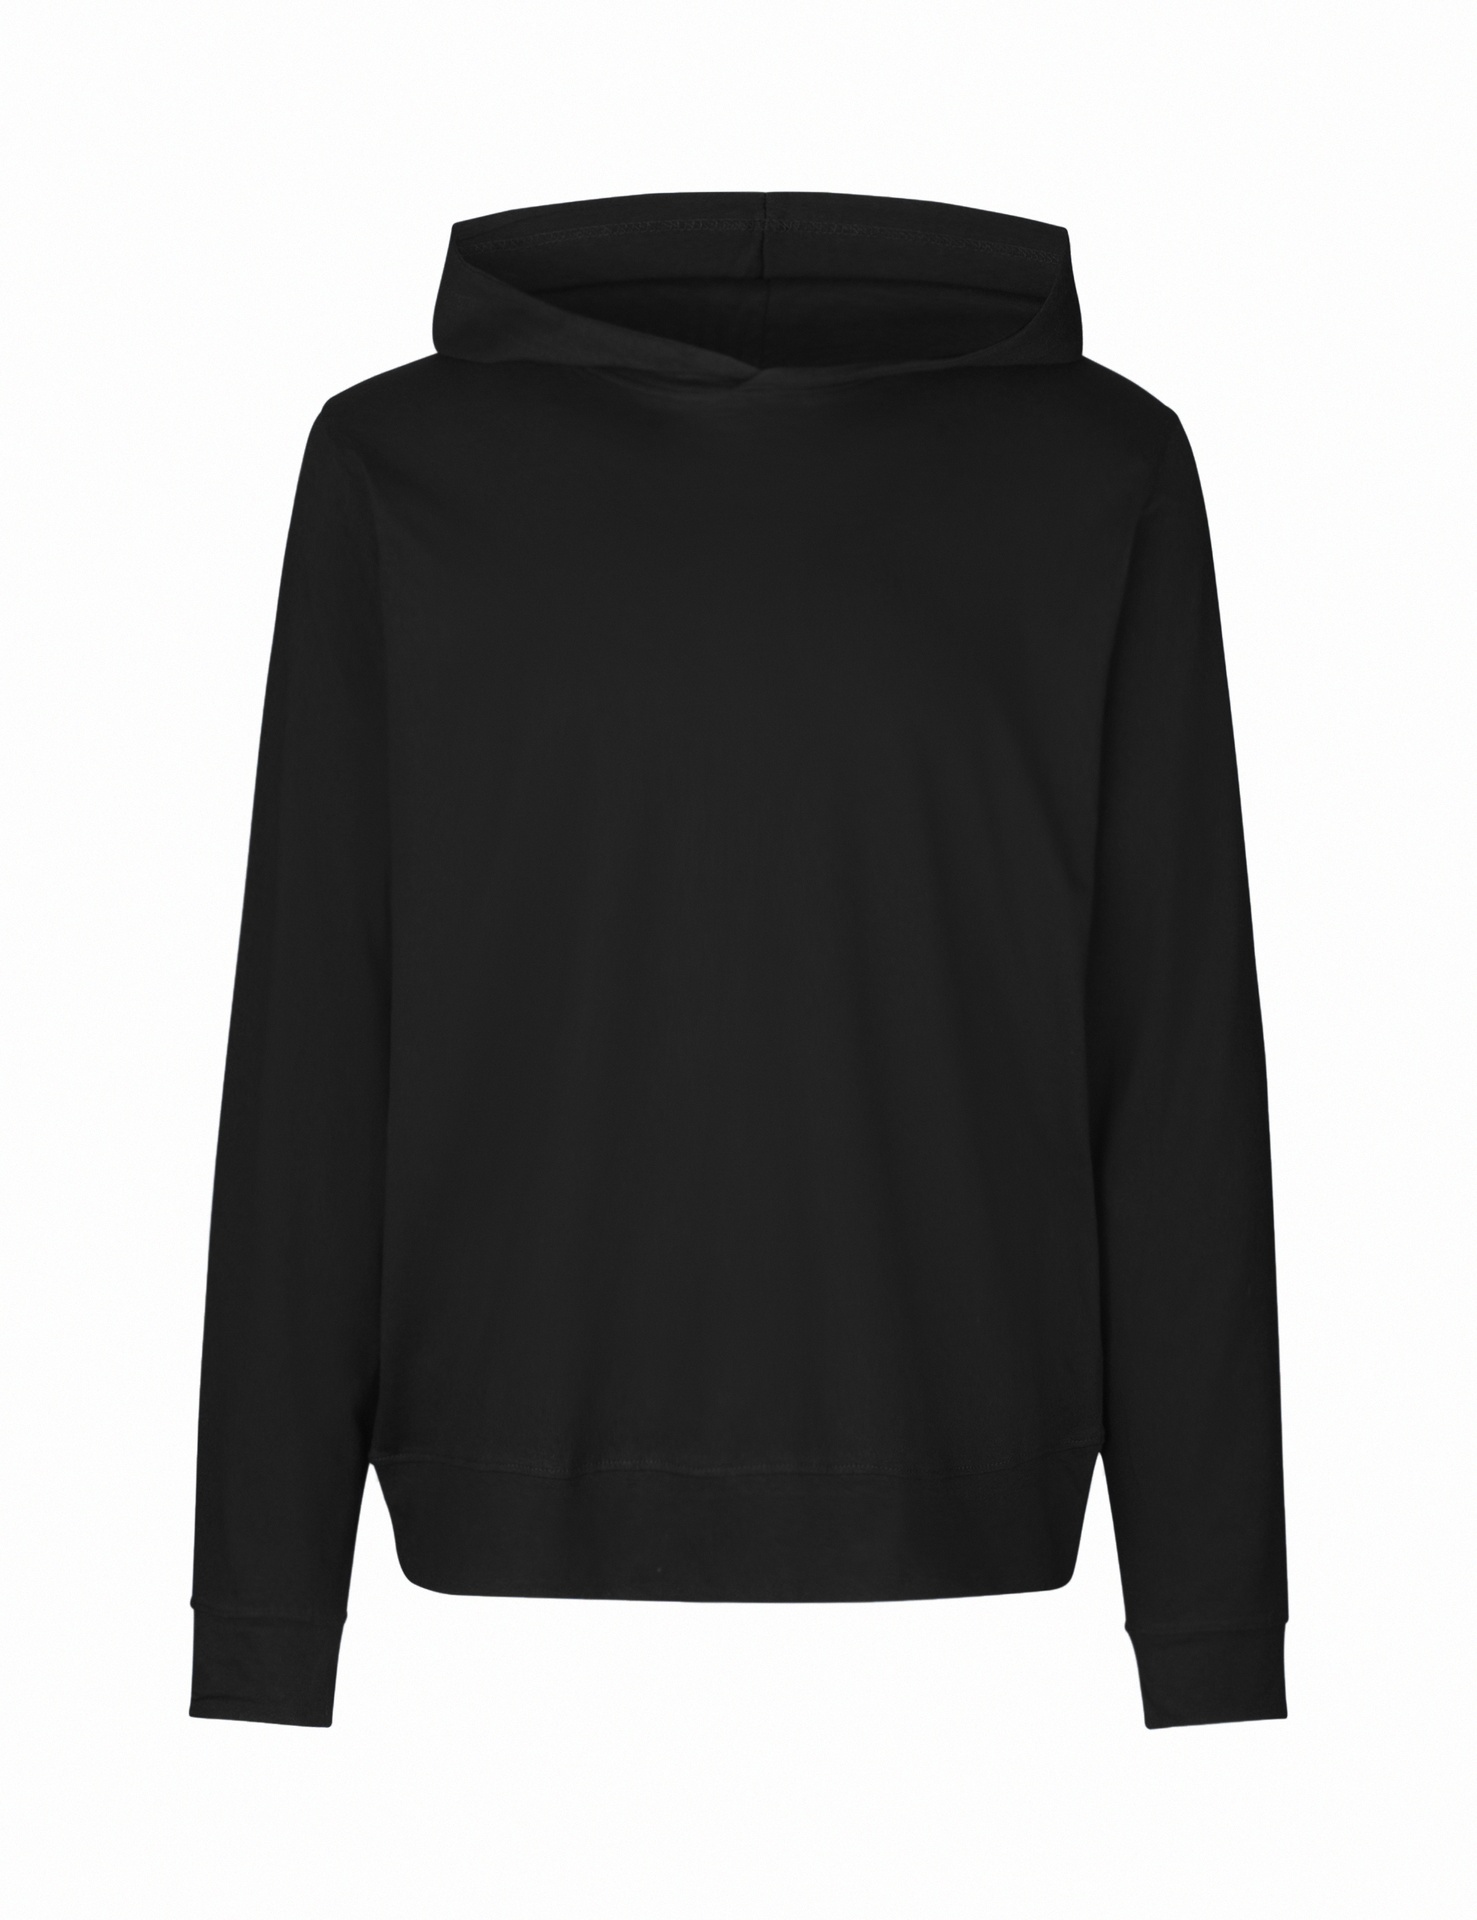 [PR/02570] Unisex Jersey Hoodie (Black 03, XL)